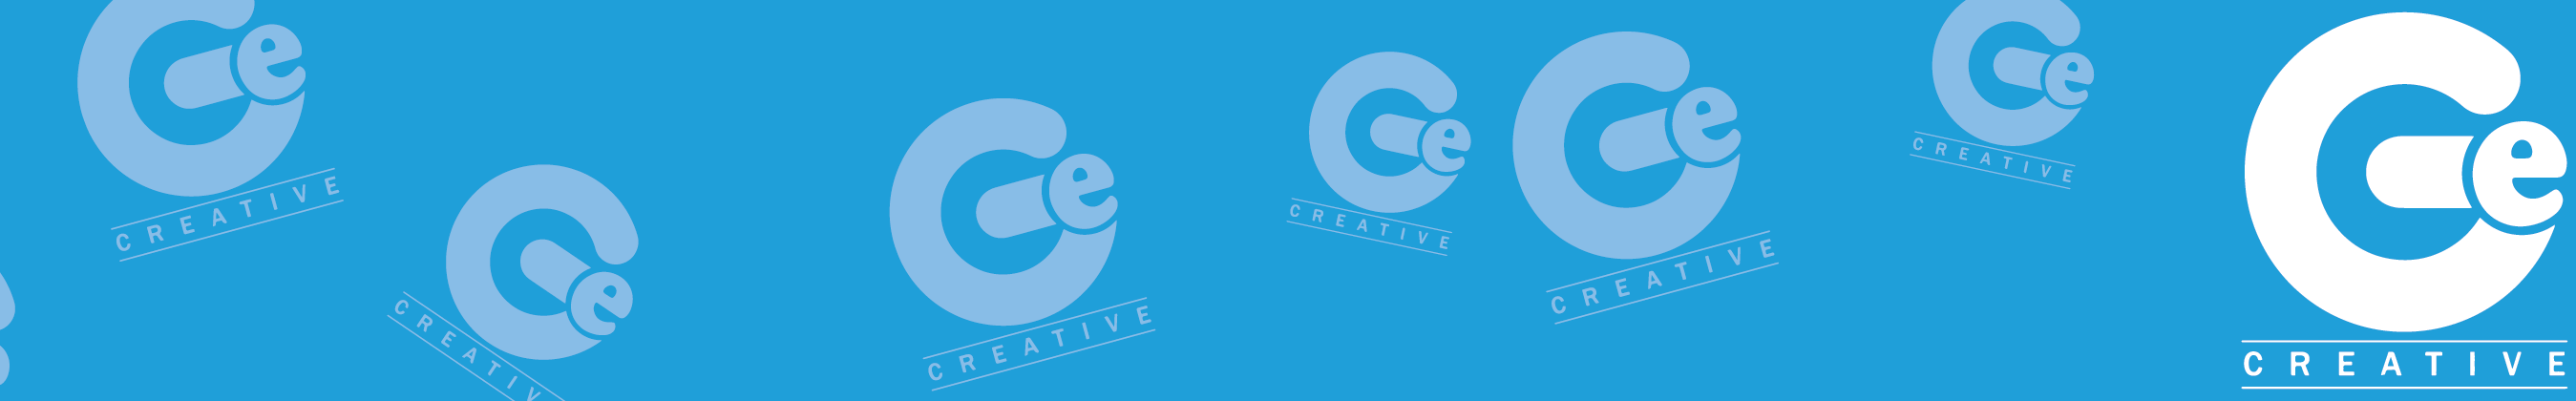 Banner del profilo di Ge Creative